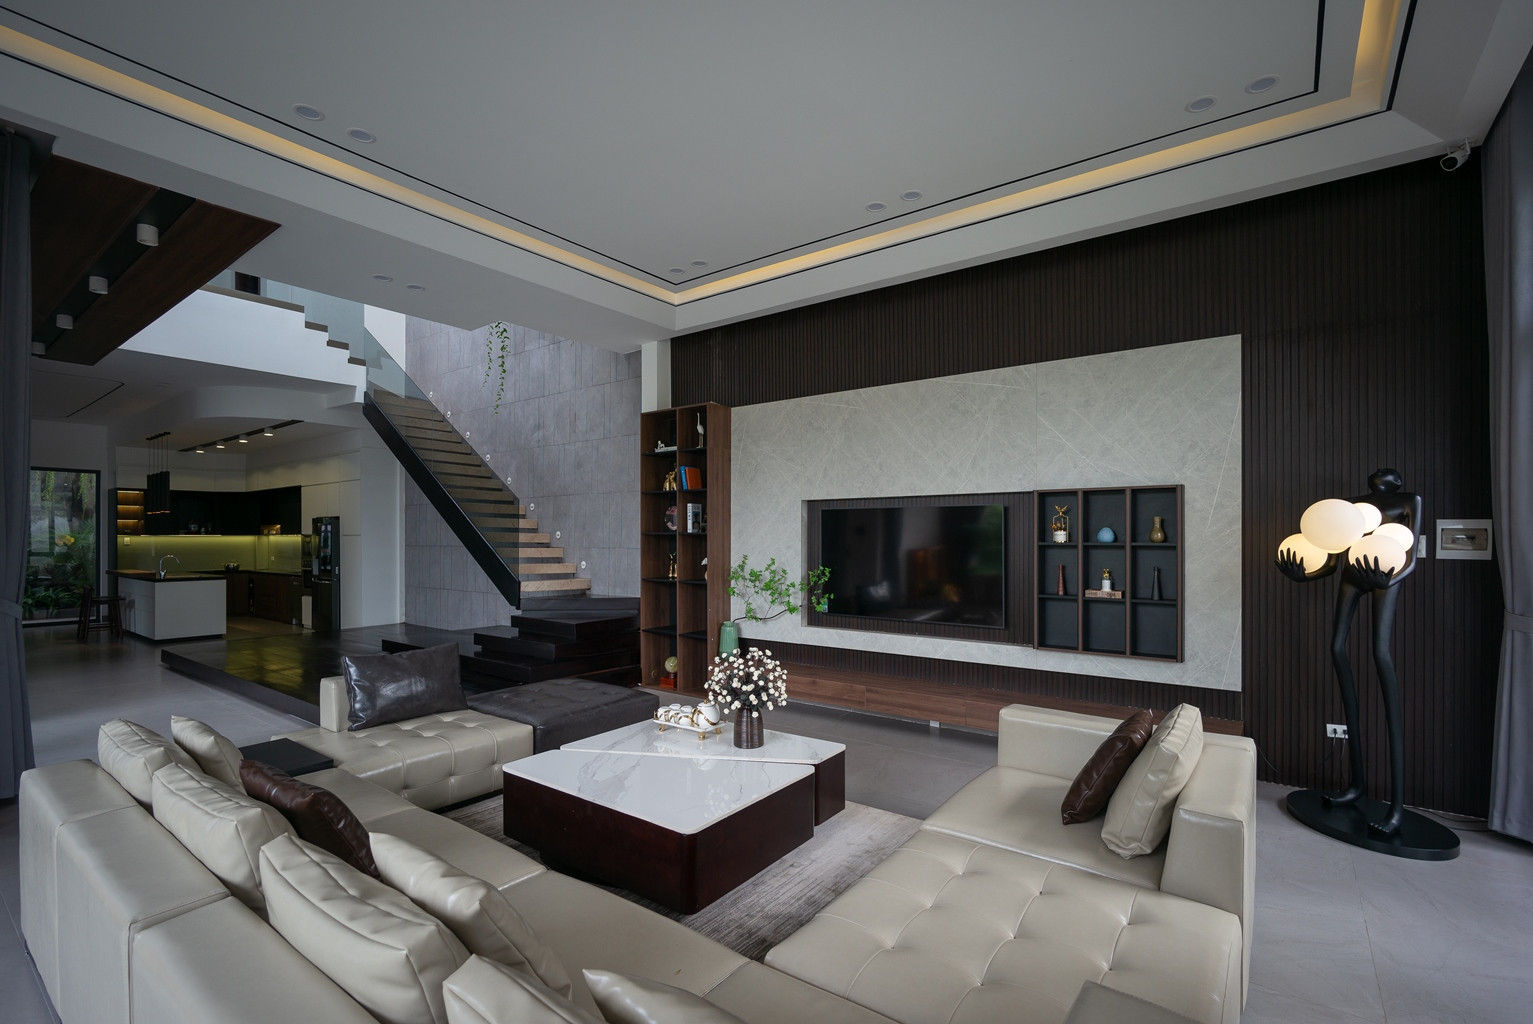 Phòng khách sử dụng vật liệu chính các gam màu tối theo đúng tính cách hướng nội của chủ nhà.